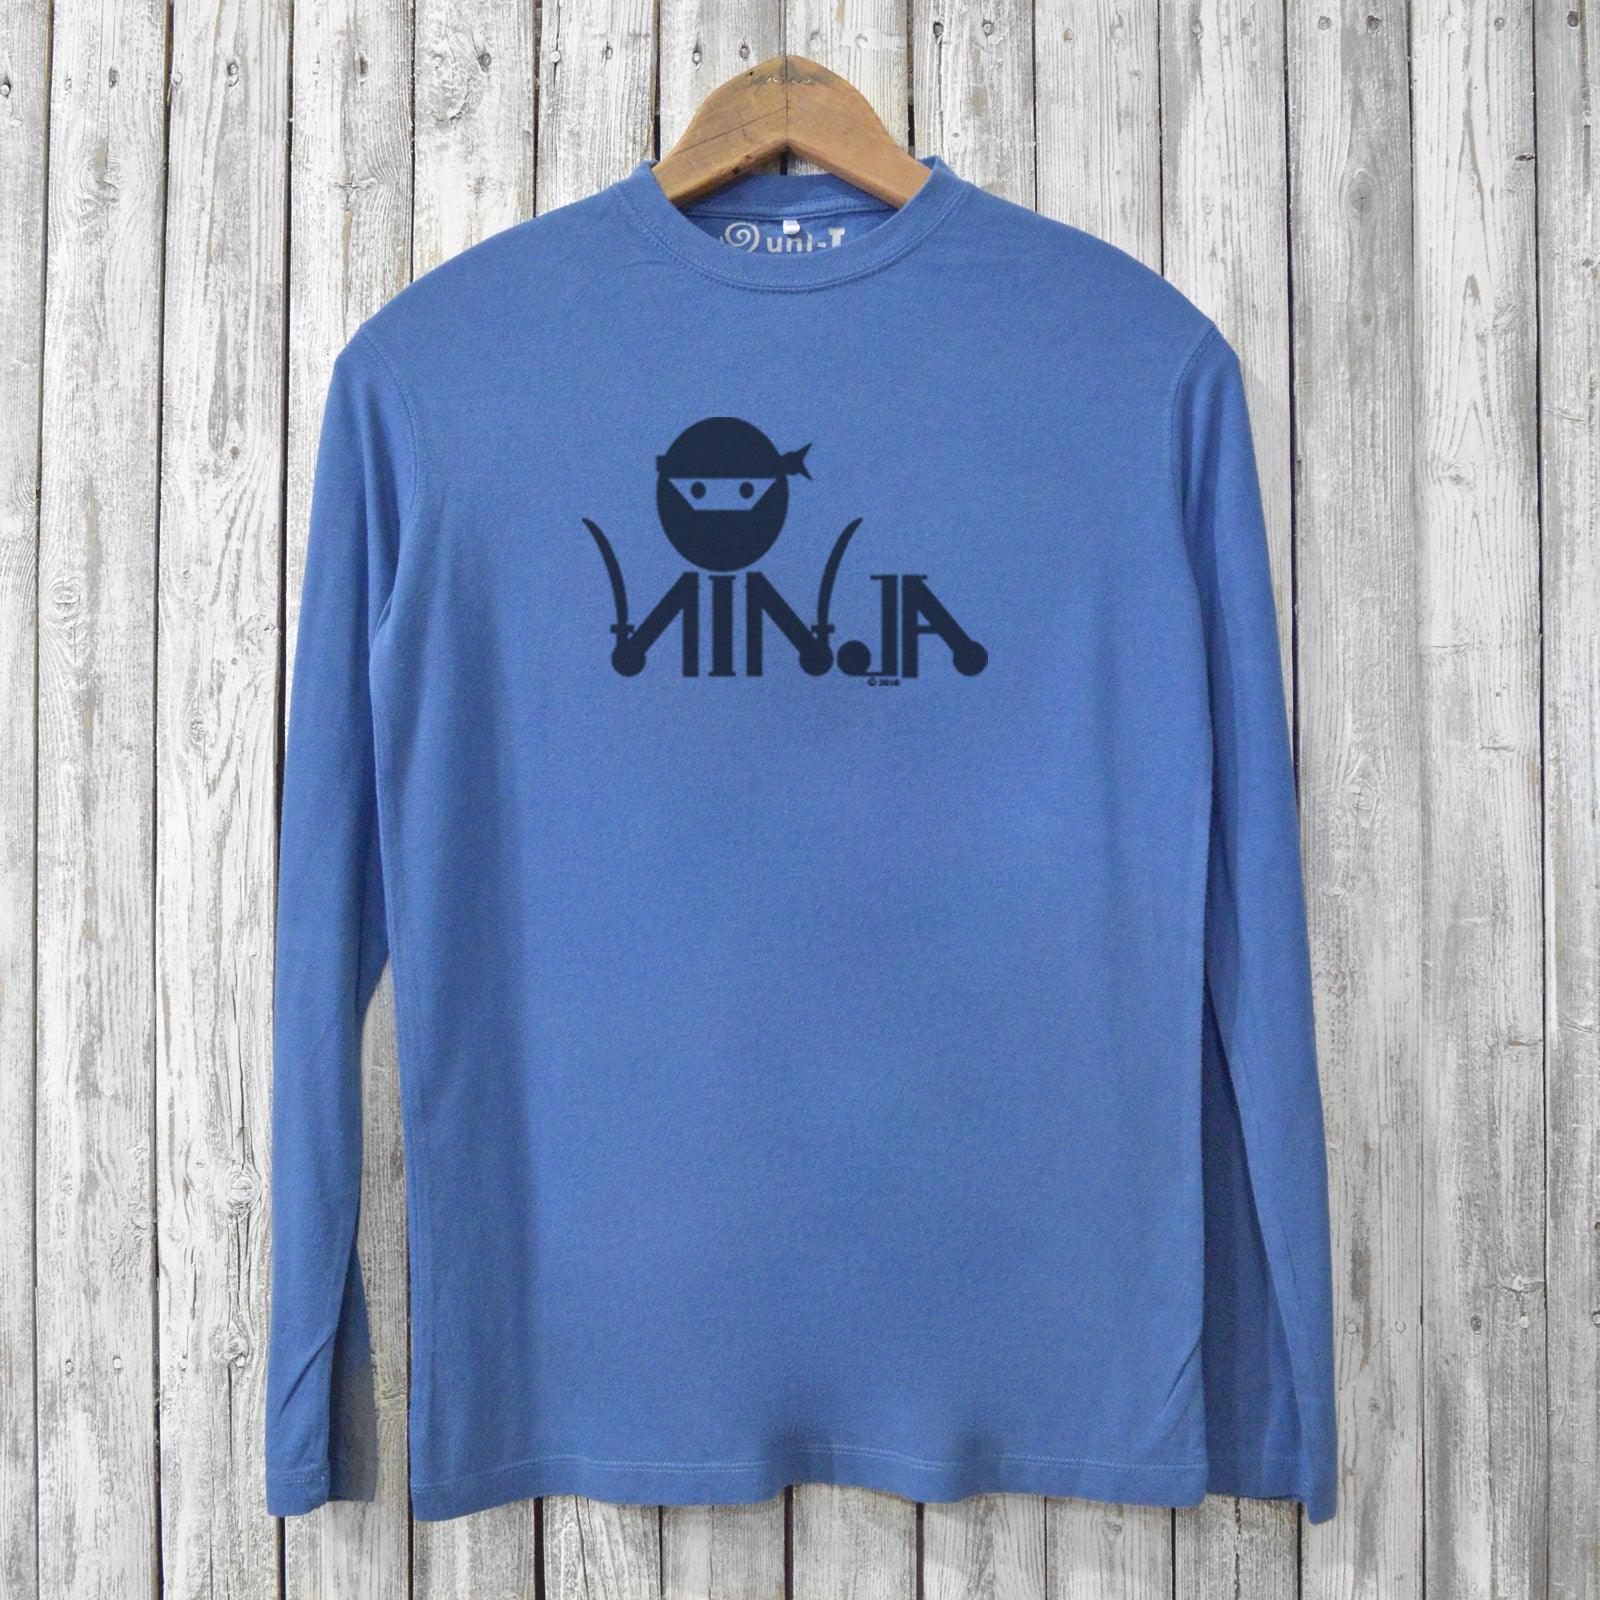 Ninja Long Sleeve T-shirts for Men Uni-T